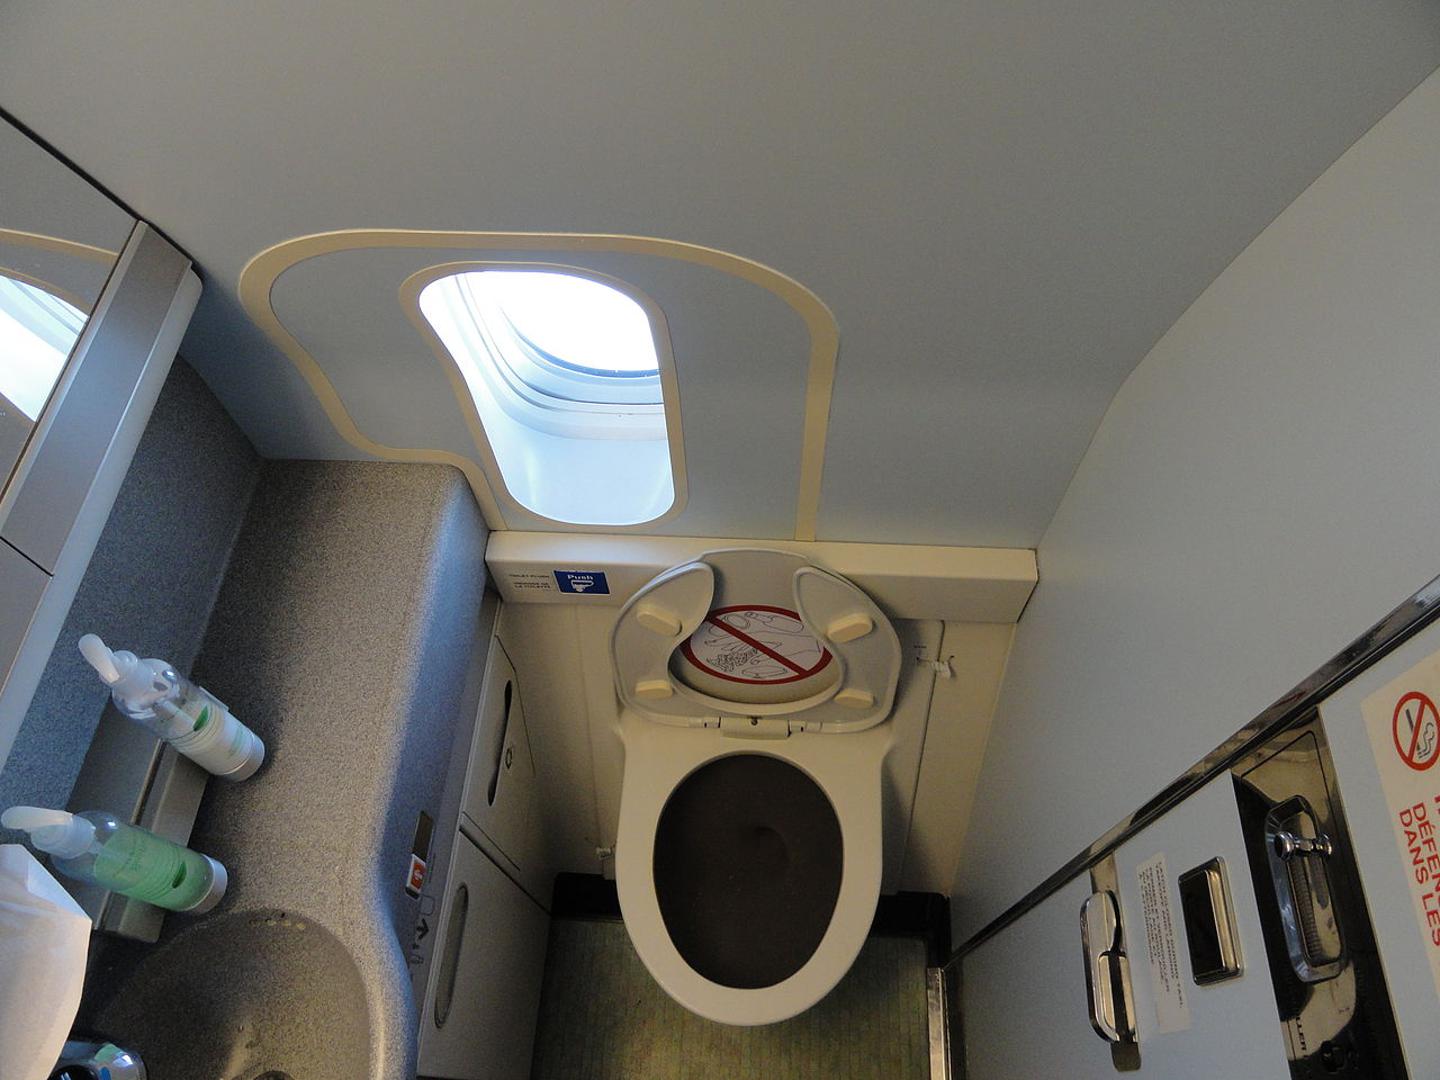 4. Vrata toaleta u avionima mogu se otključati i zaključati s vanjske strane, a mehanizam je obično sakriven ispod znaka zabranjenog pušenja.